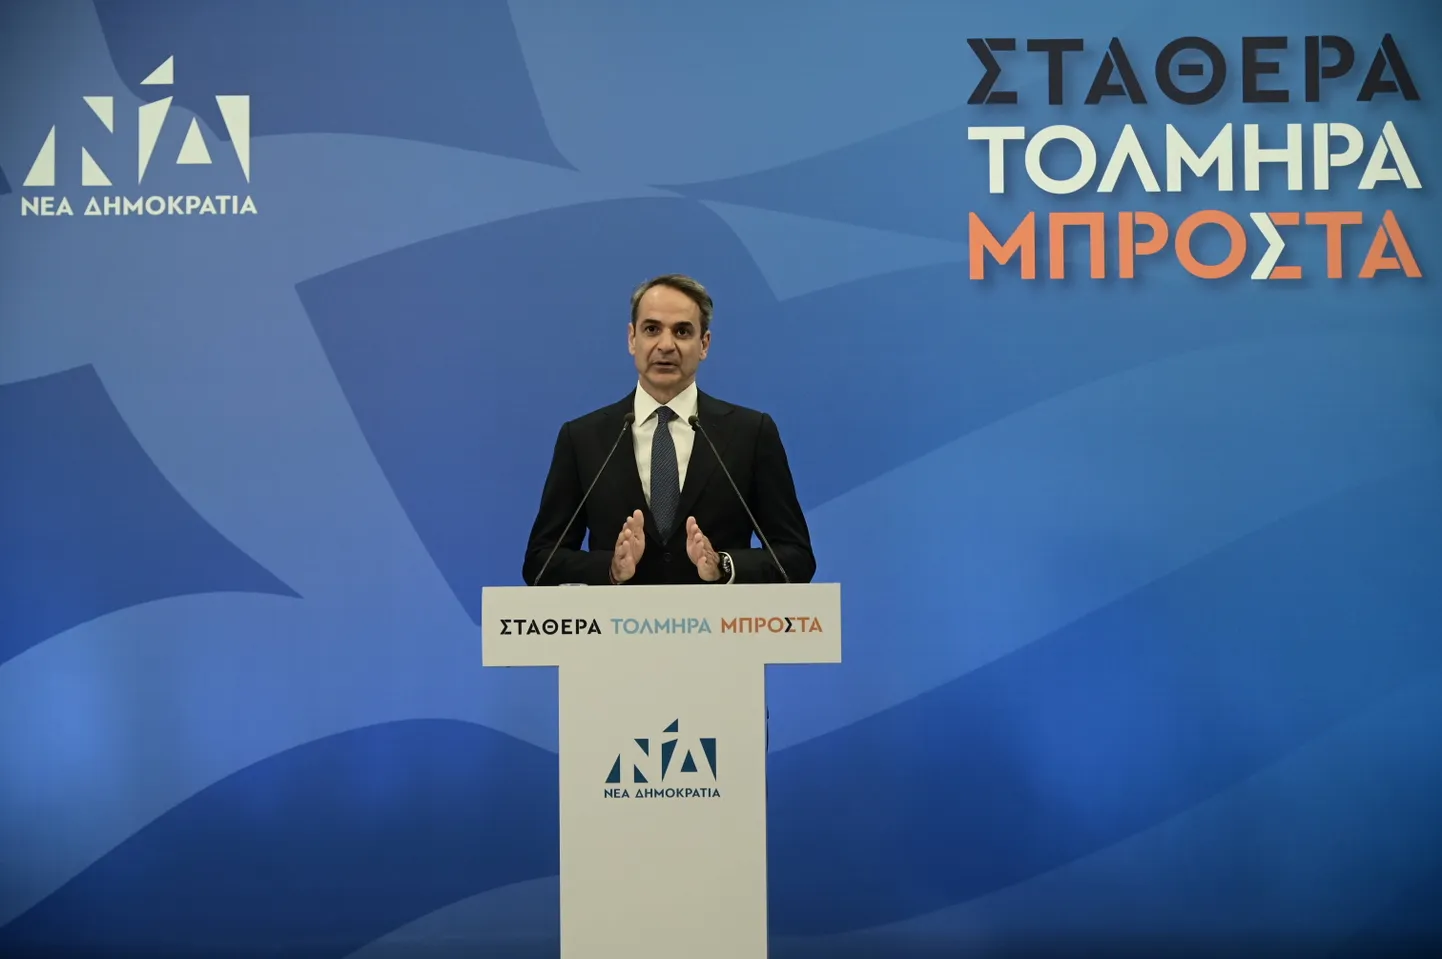 Kreeka peaminister Kyriákos Mitsotákis esinemas pärast pühapäeval peetud üldvalimisi.